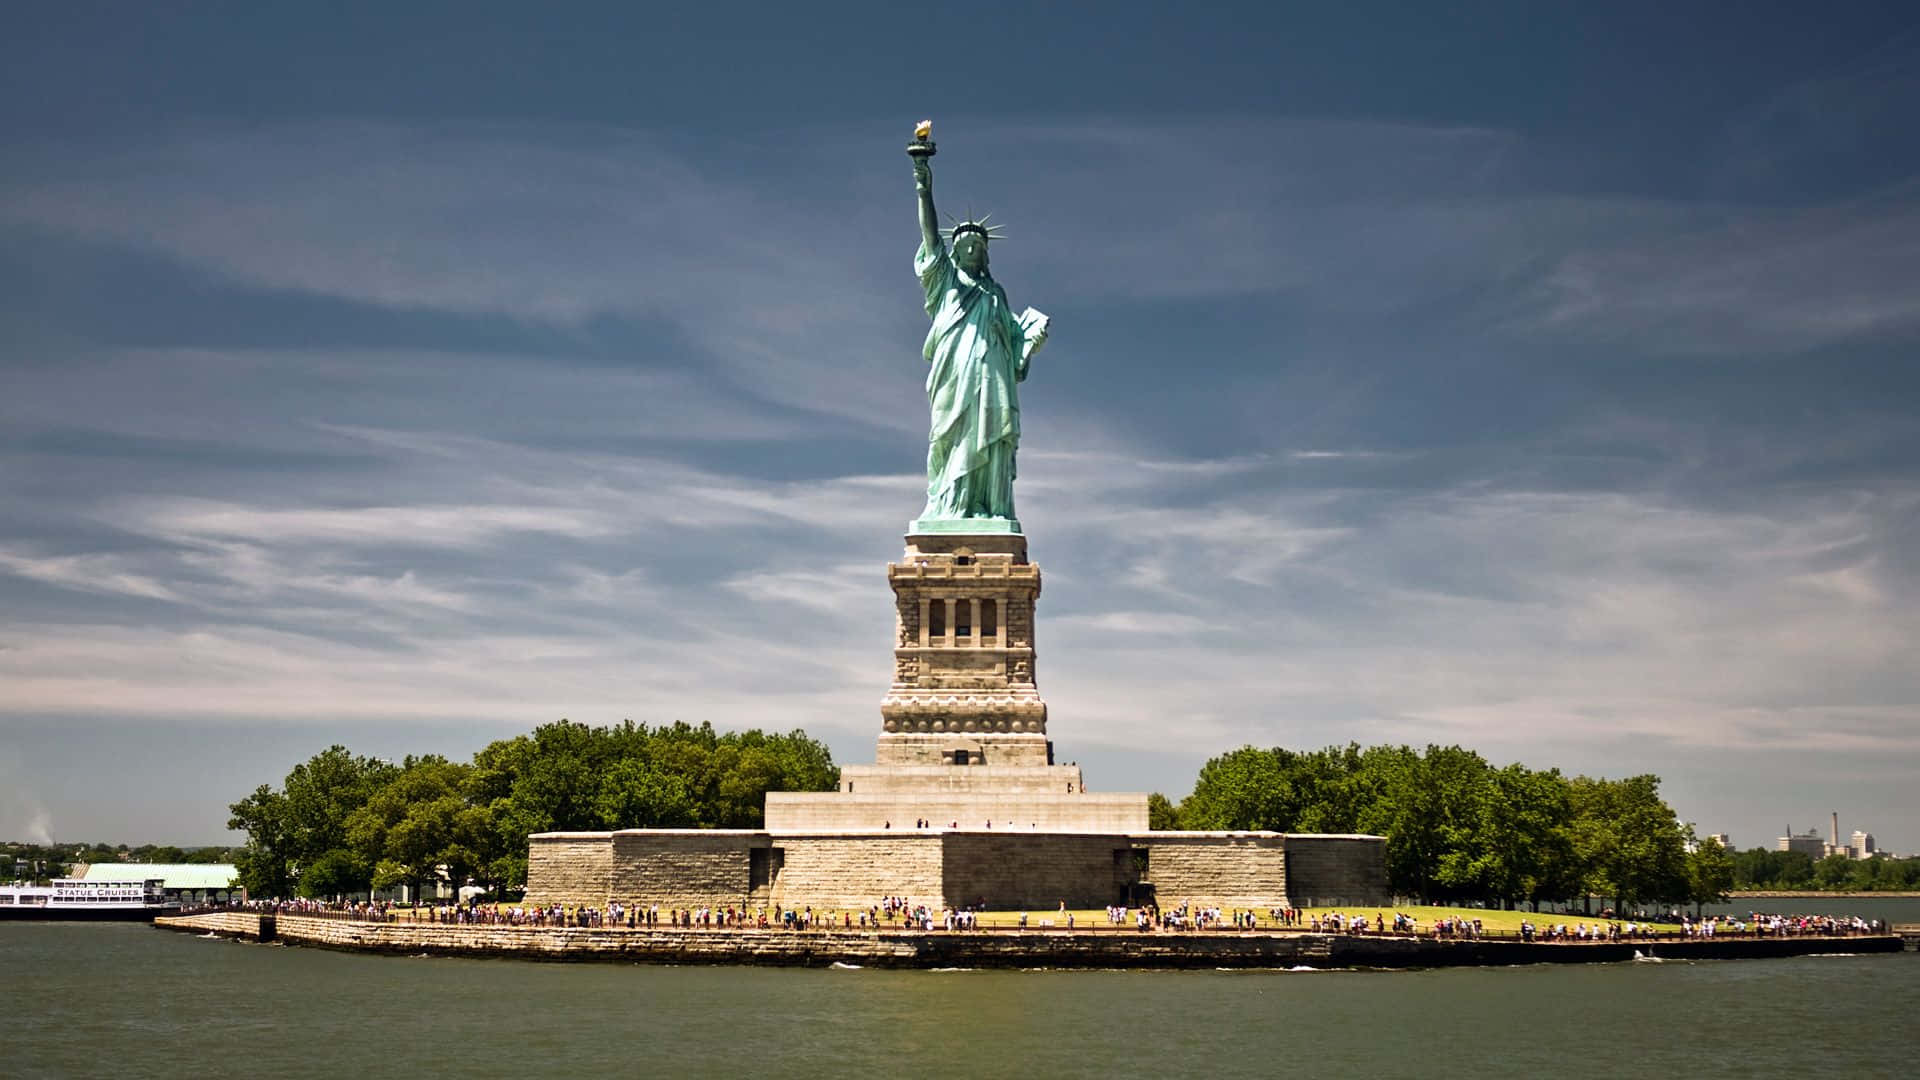 Dieikonische Freiheitsstatue Steht Hoch In New York City.